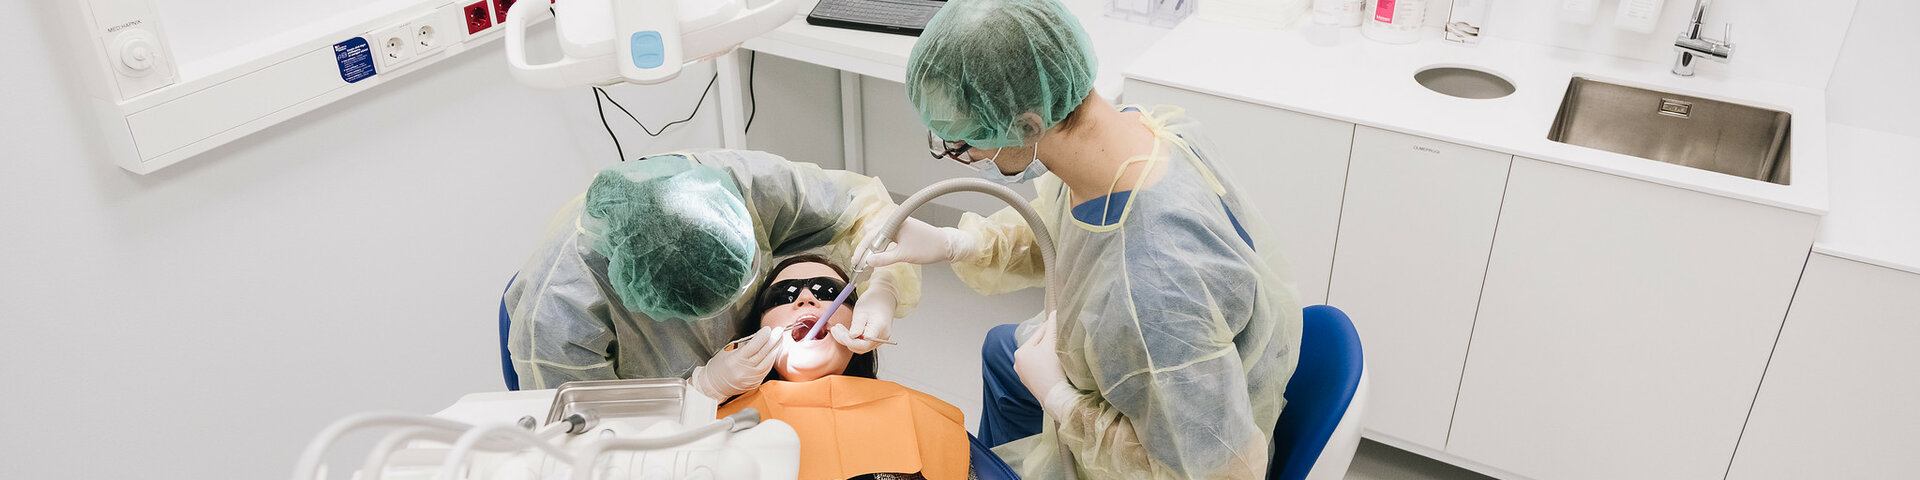 Autotransplantatsioon on peetunud või lõikunud hamba siirdamine sama inimese ühest suuõõne piirkonnast teise, kas lagunenud või puuduva hamba kohale